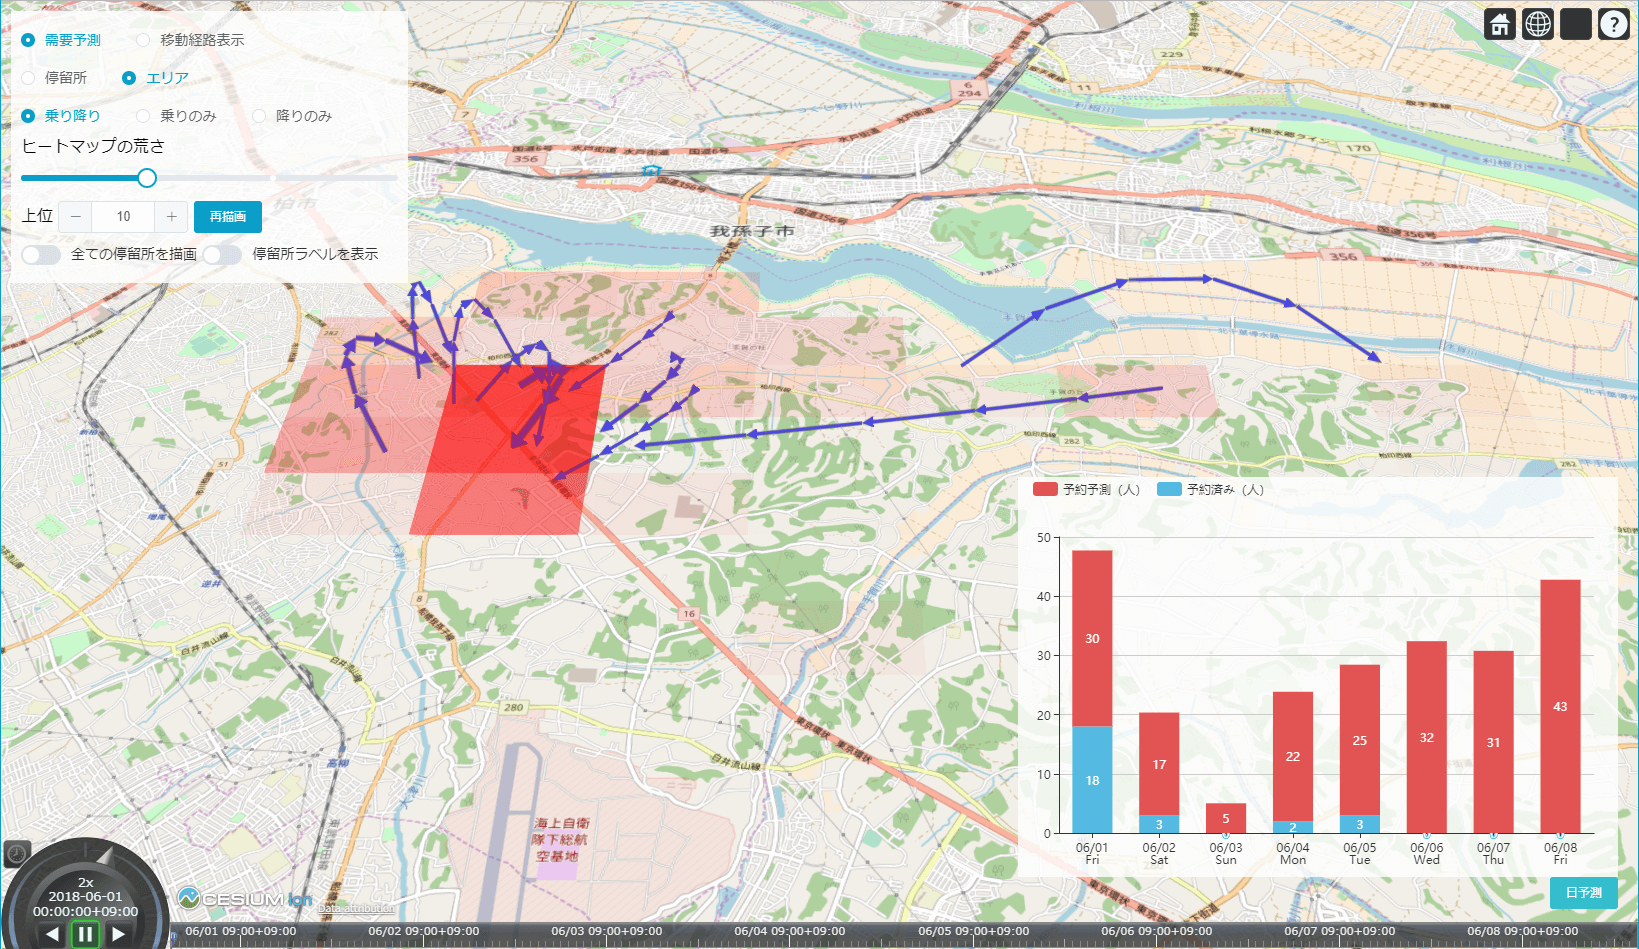 運行地域における需要レベルの高さを示した地図